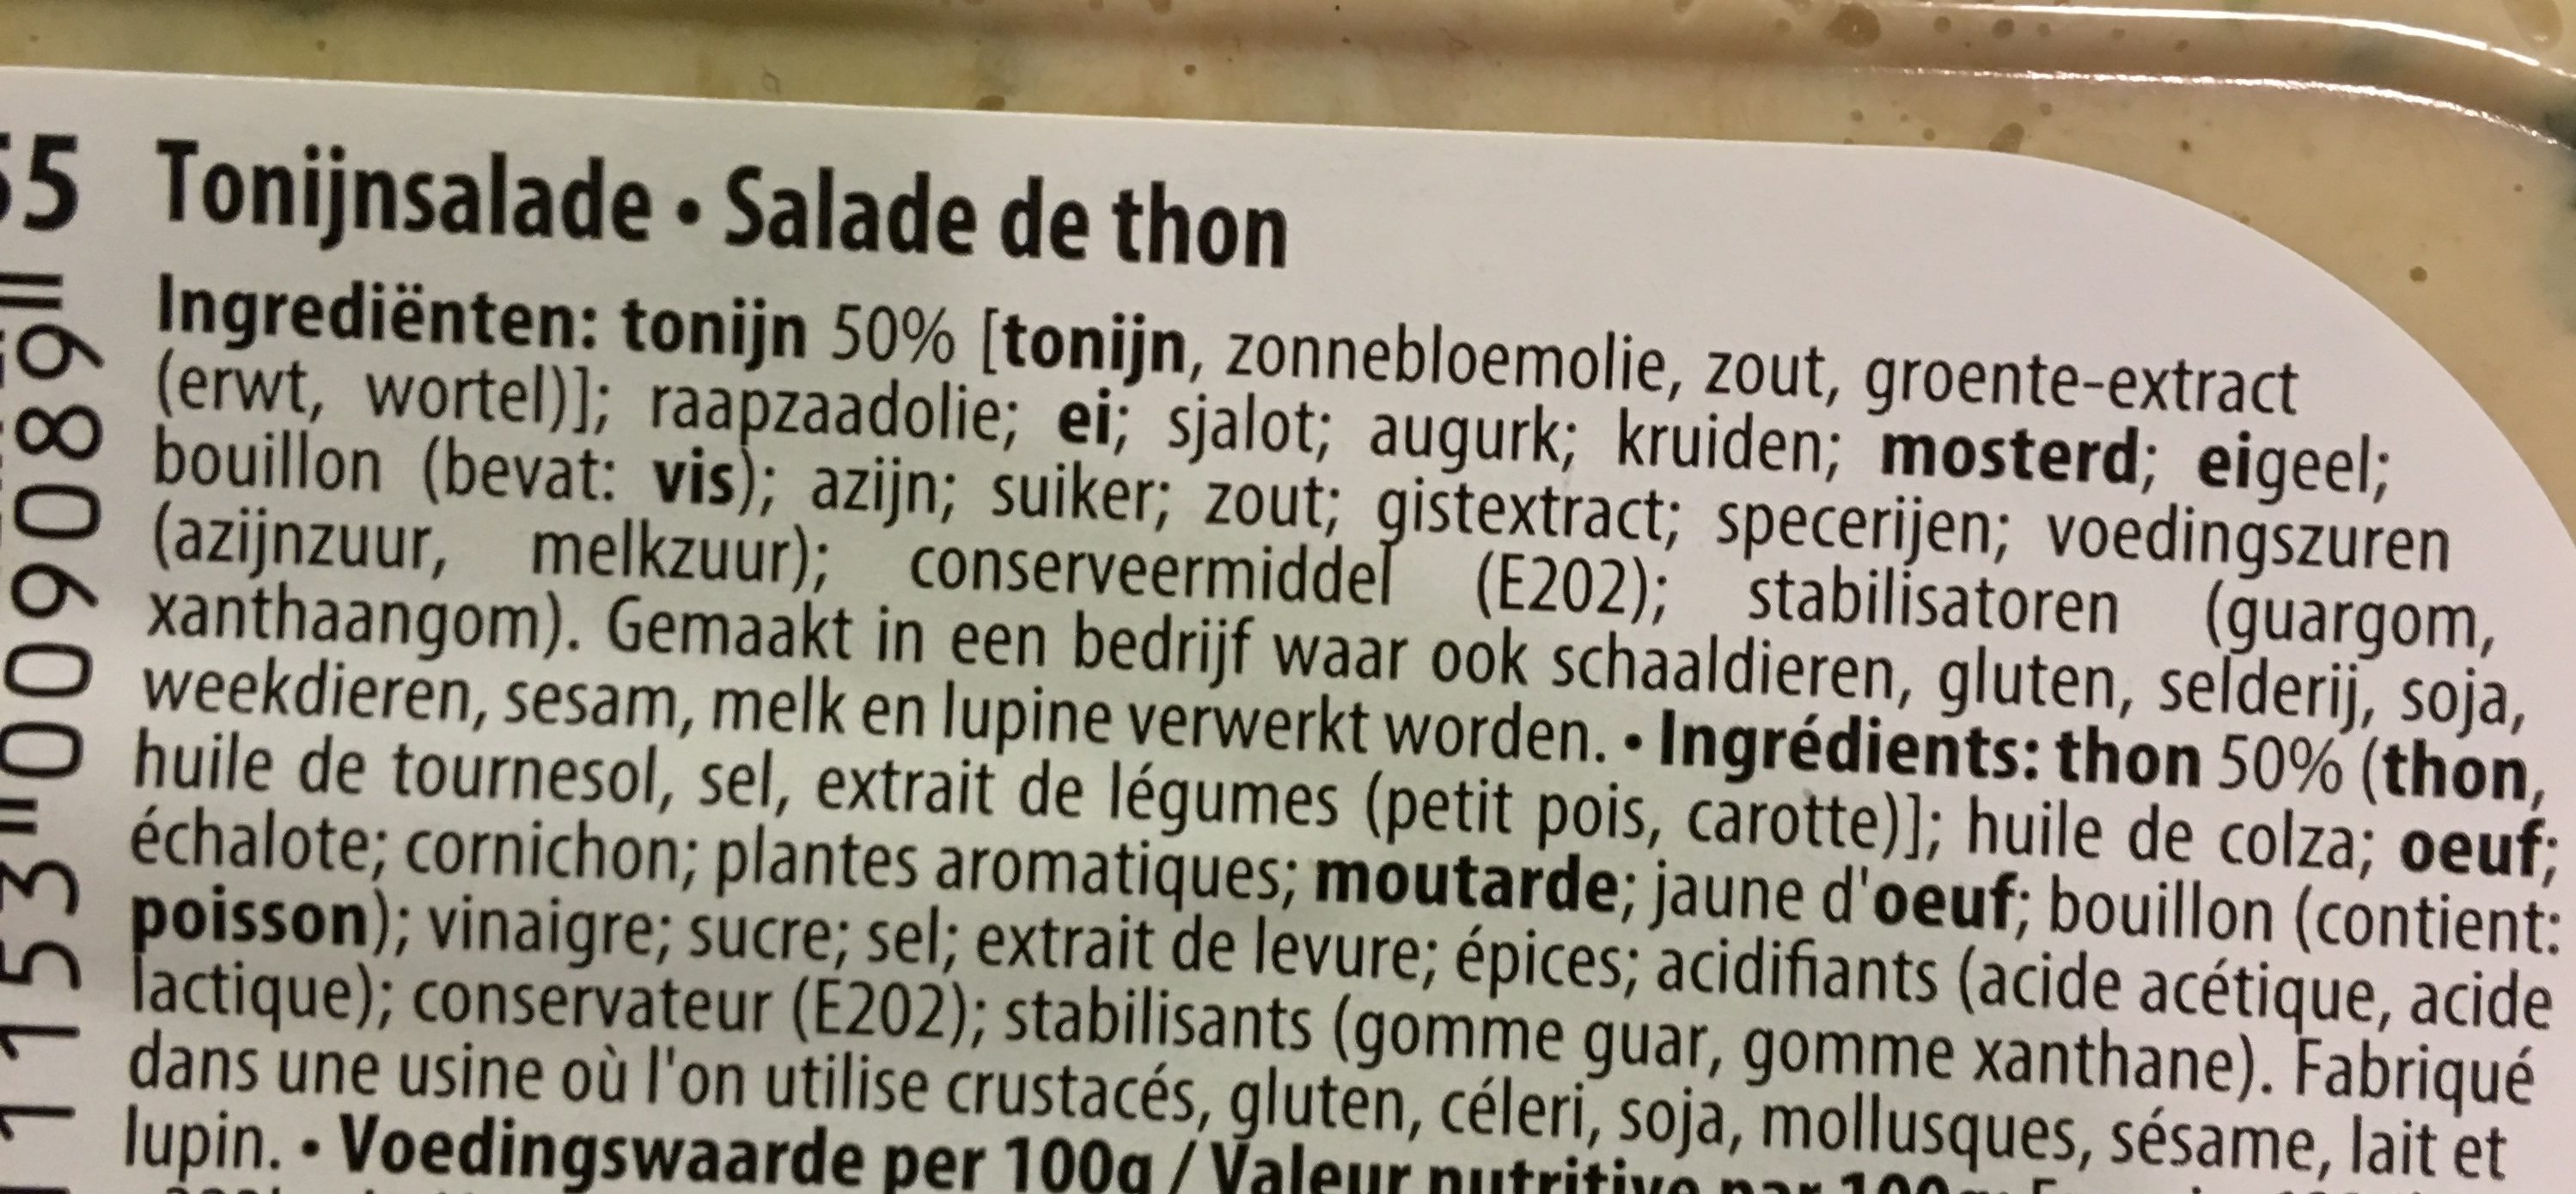 Salade de thon - Ingrediënten - fr